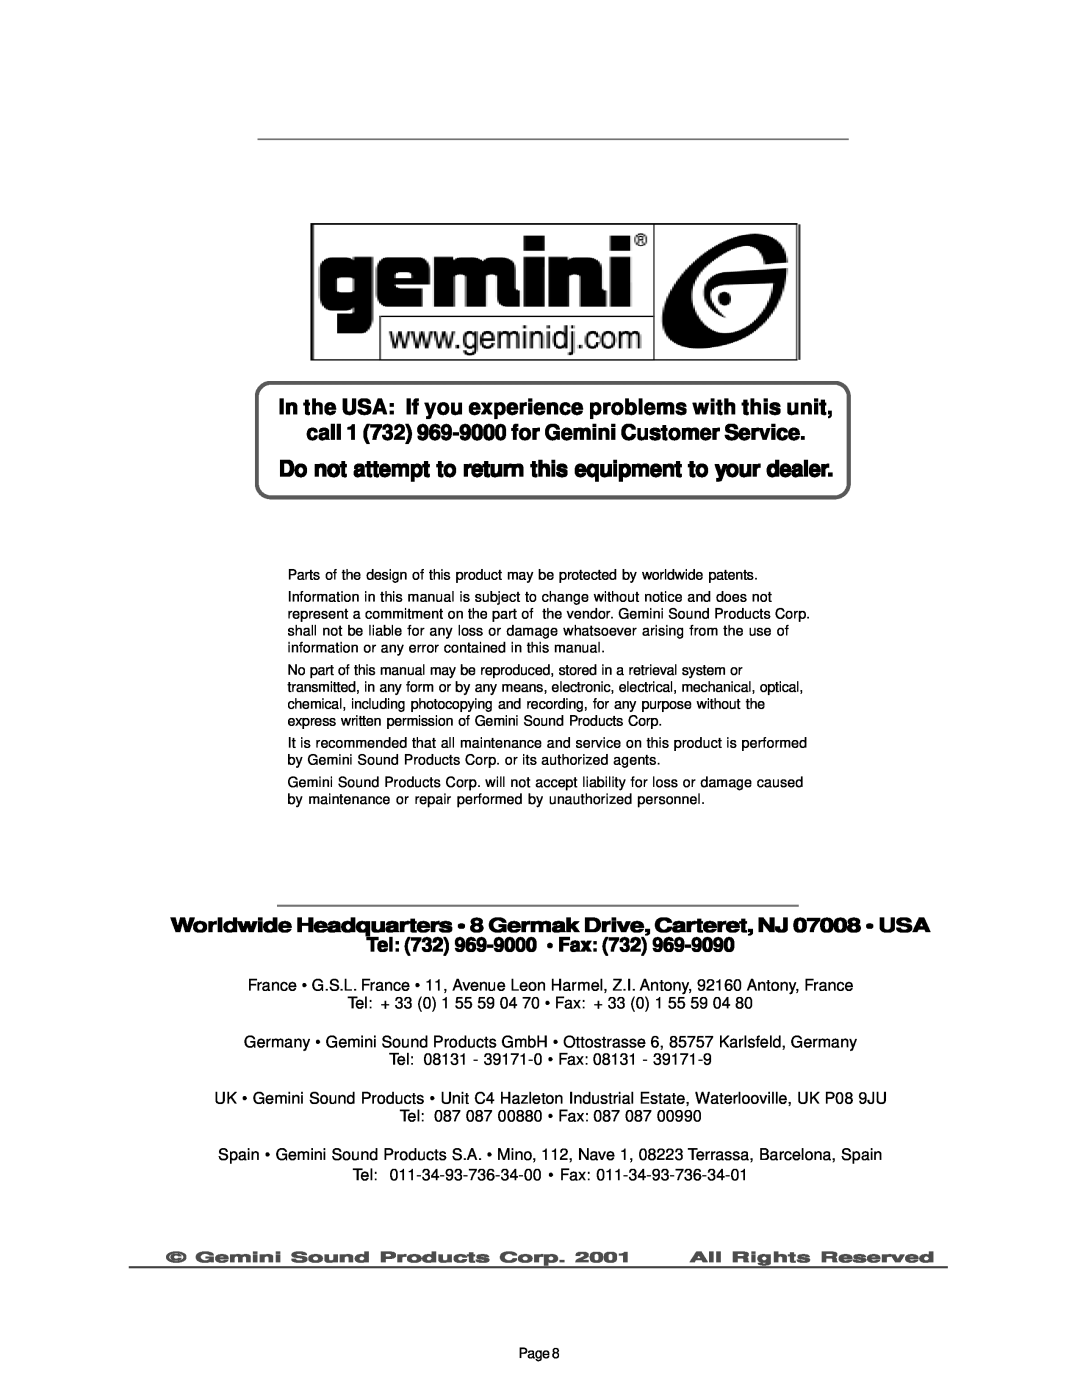 Gemini PMX-350 manual call 1 732 969-9000for Gemini Customer Service, Tel 732 969-9000 Fax 